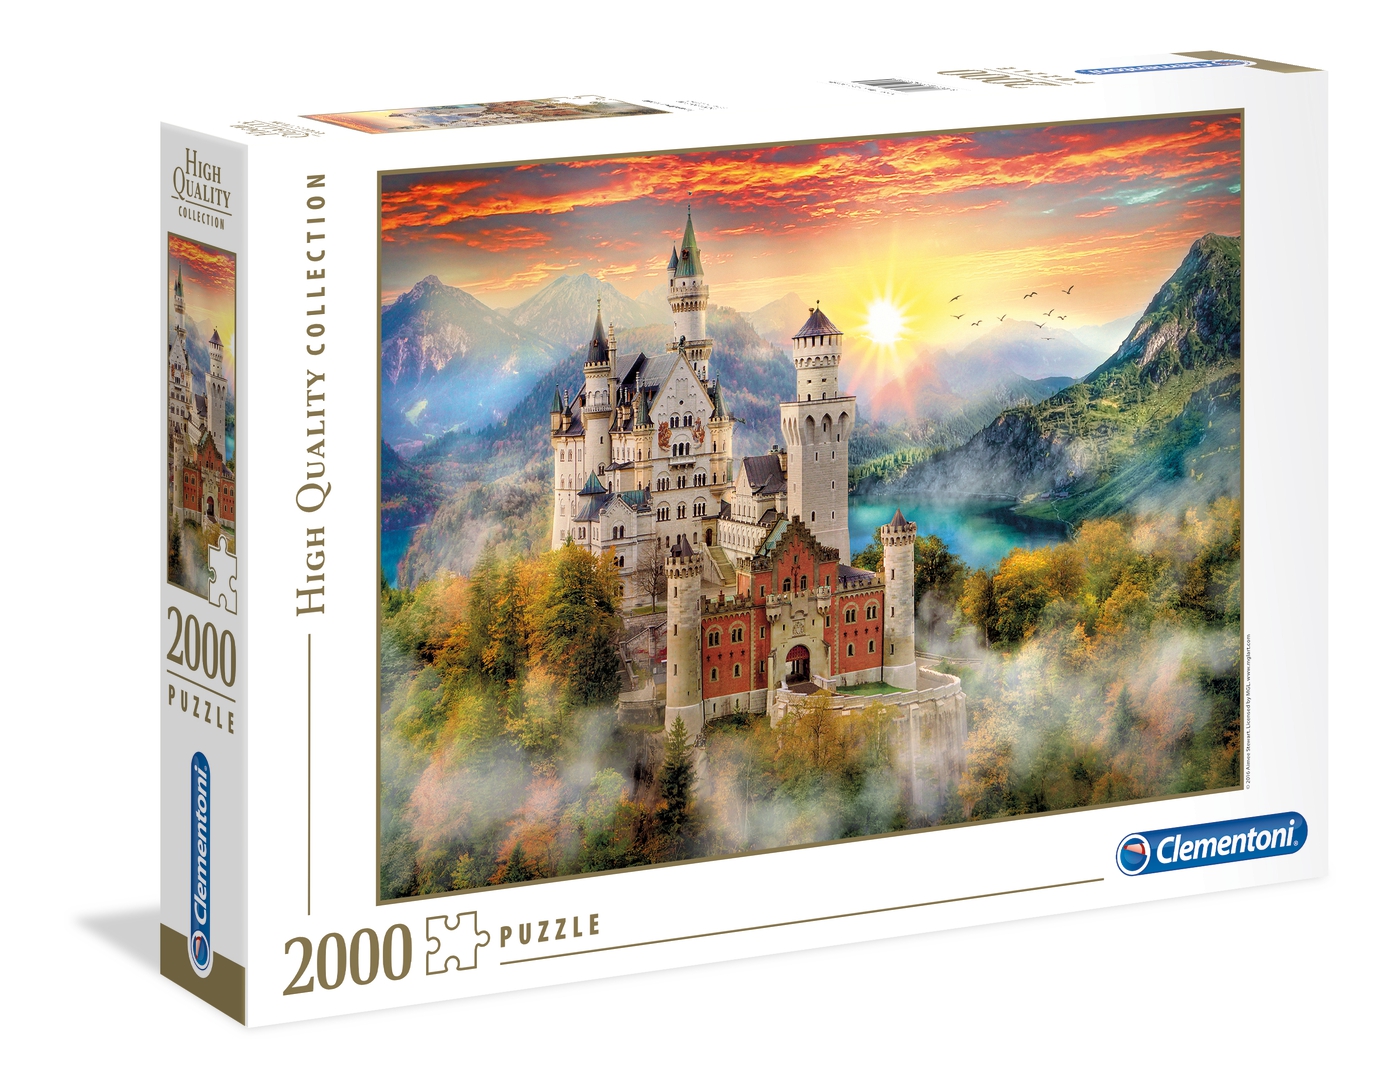 Puzzle 2000 piezas -Neuschwanstein- Clementoni